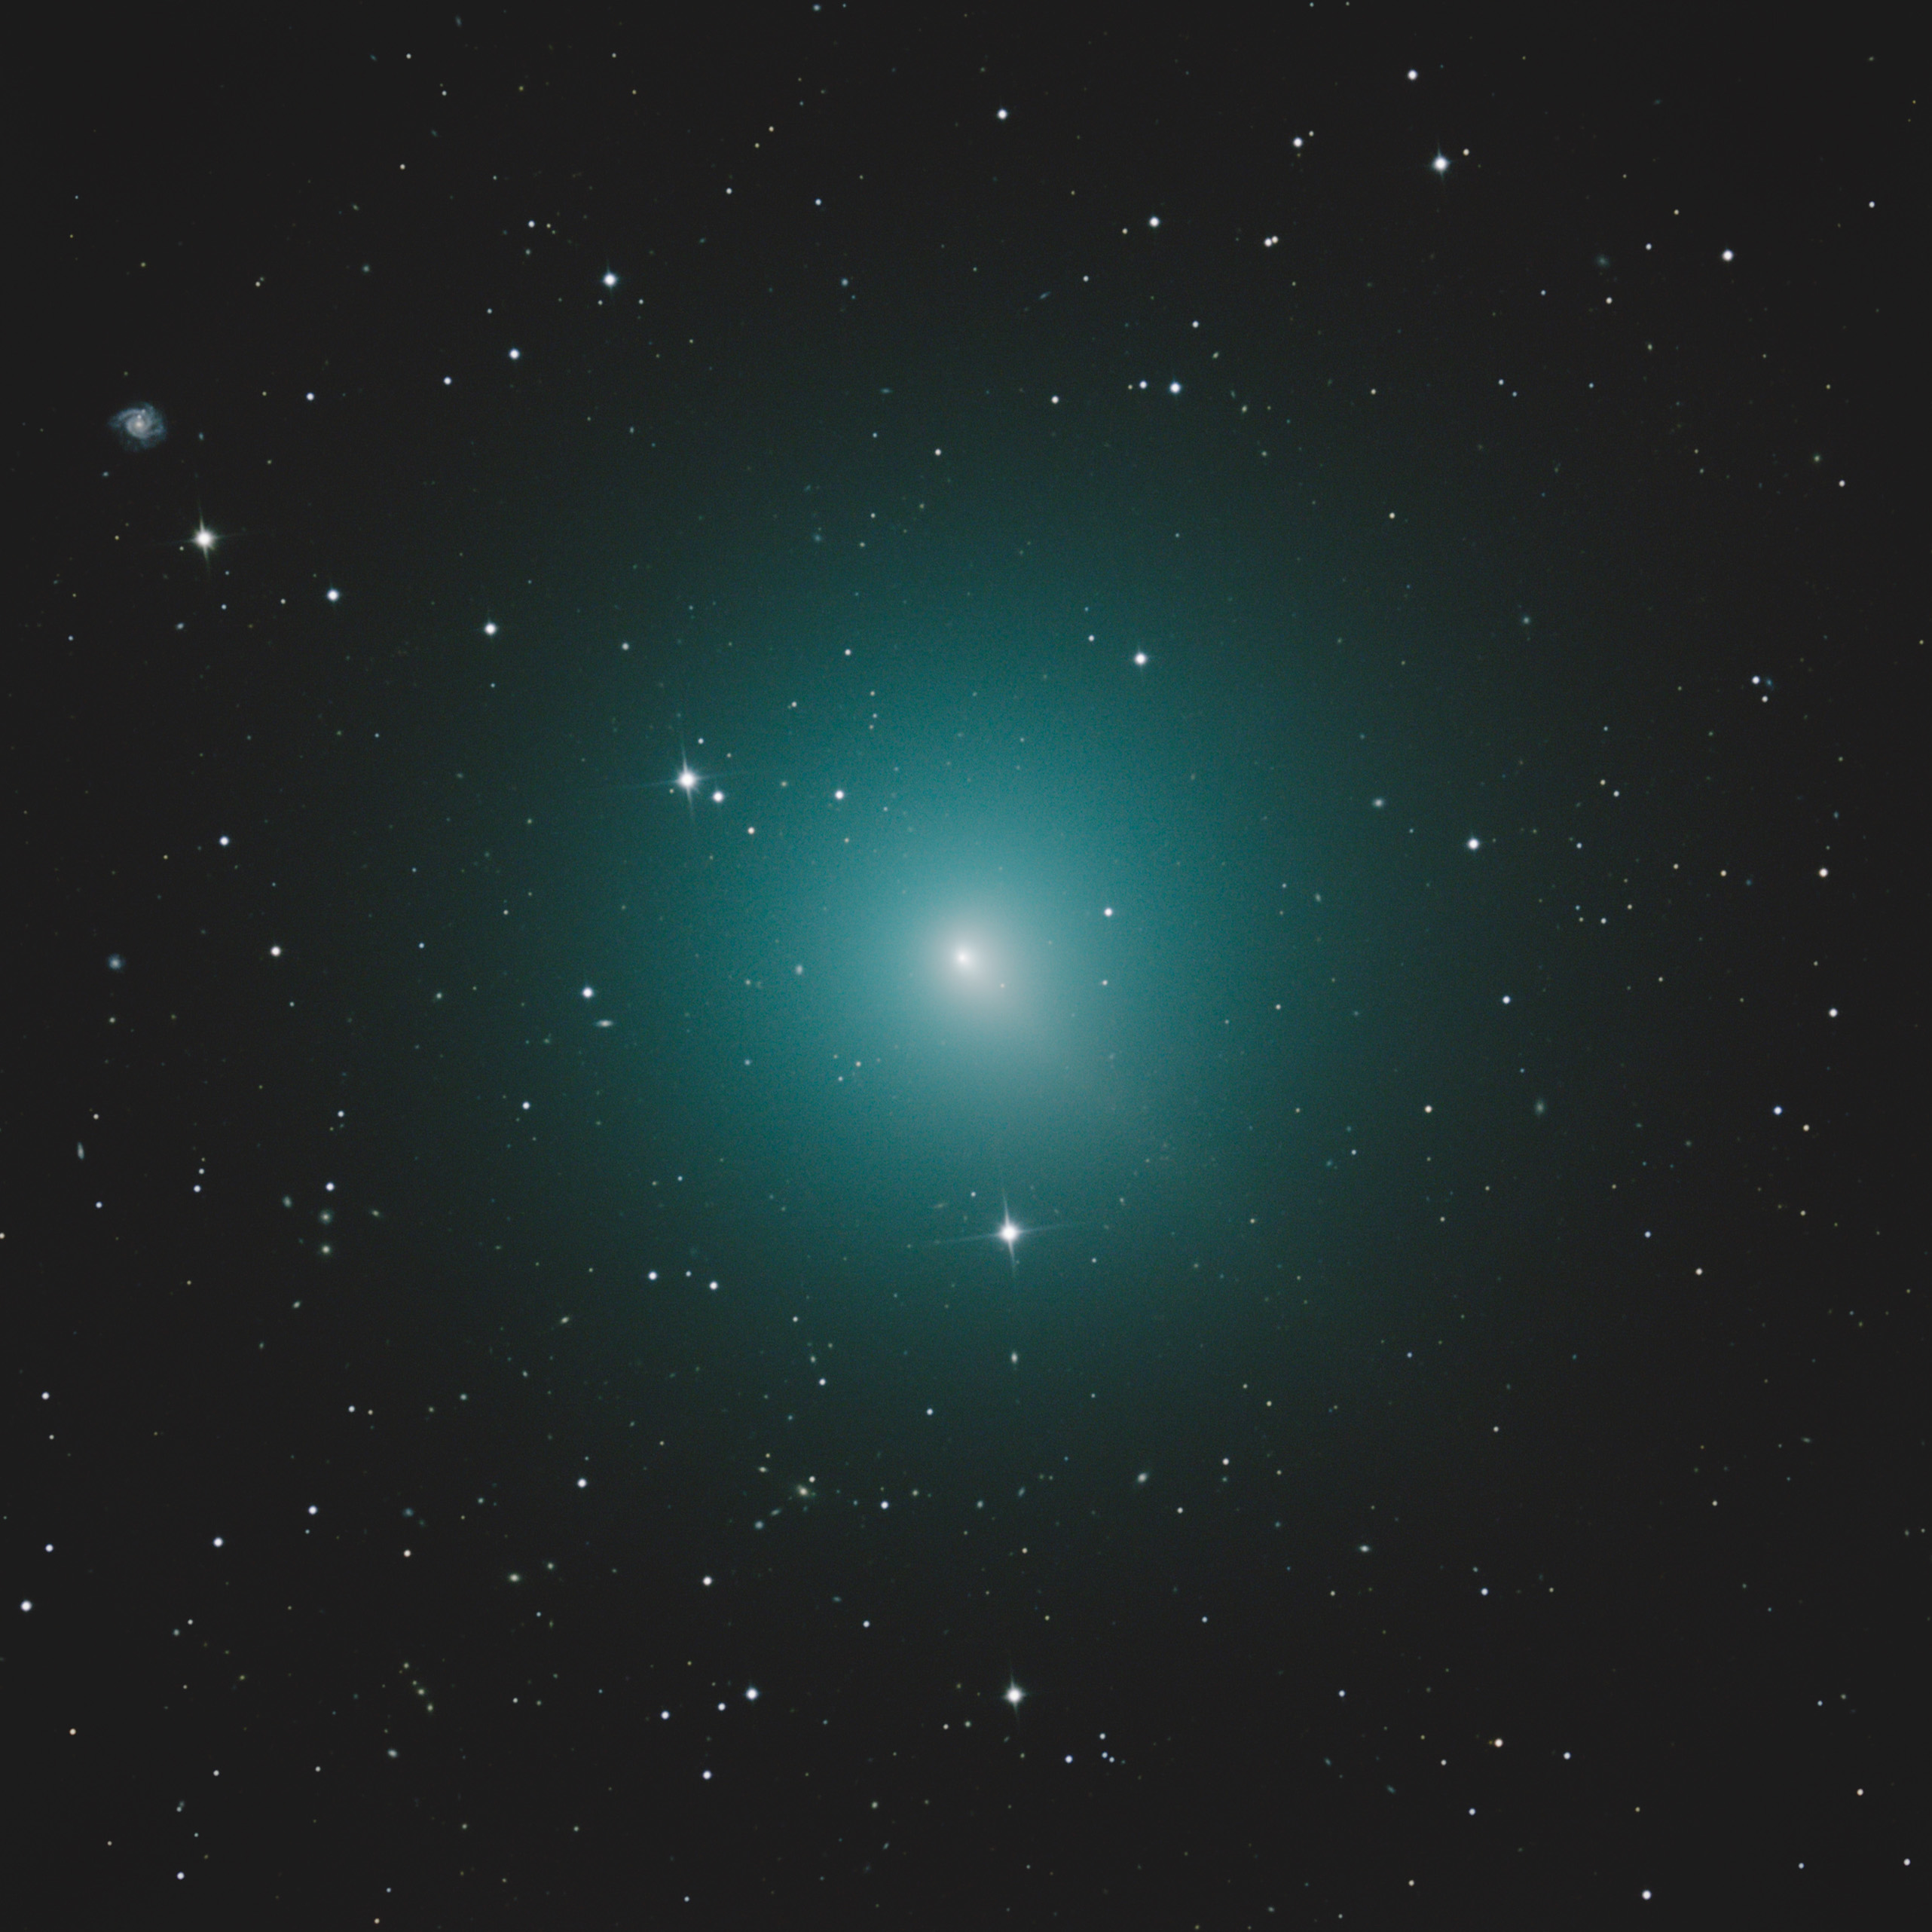 Comet 46P/Wirtanen.